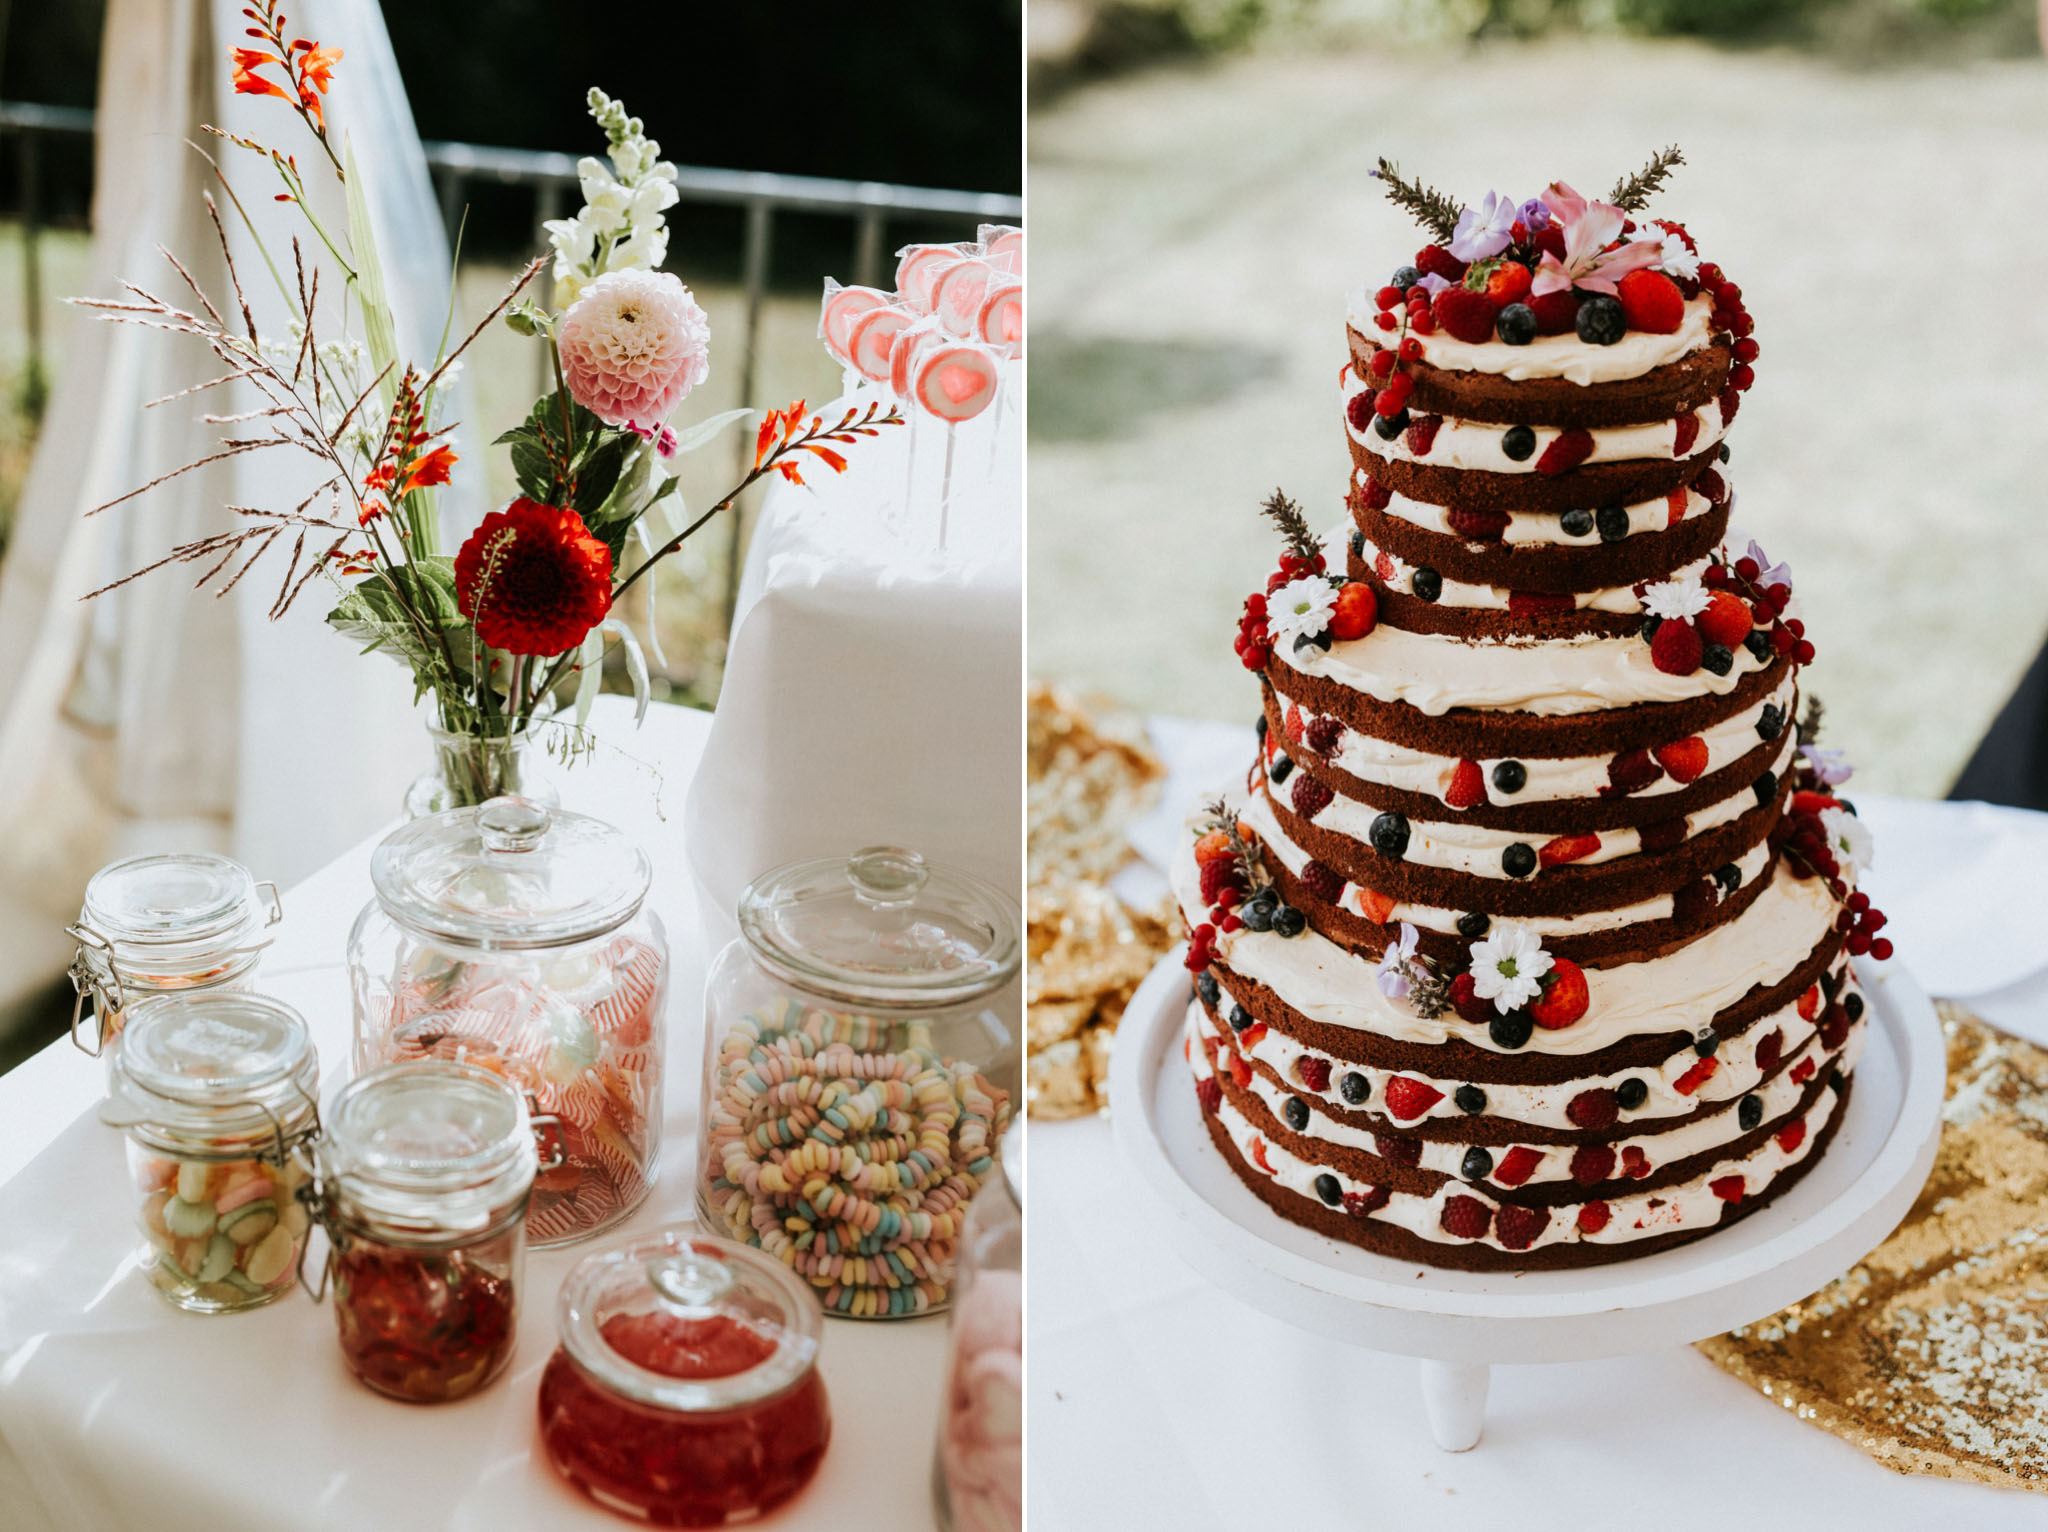 Eine Hochzeitstorte und ein Blumenbouquet bei einer Hochzeit